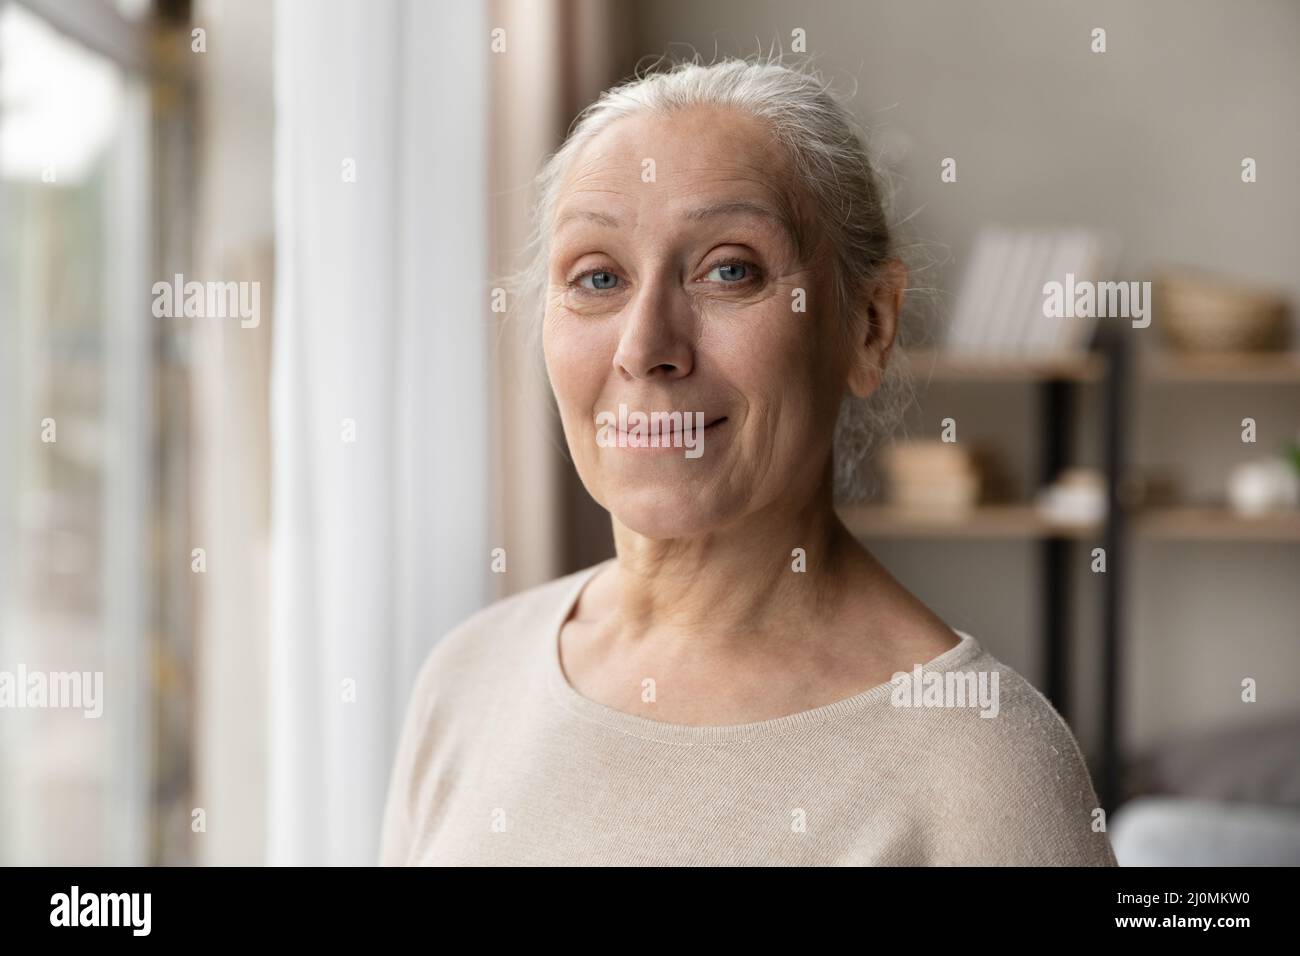 Headshot portrait attractive older woman posing indoor Stock Photo